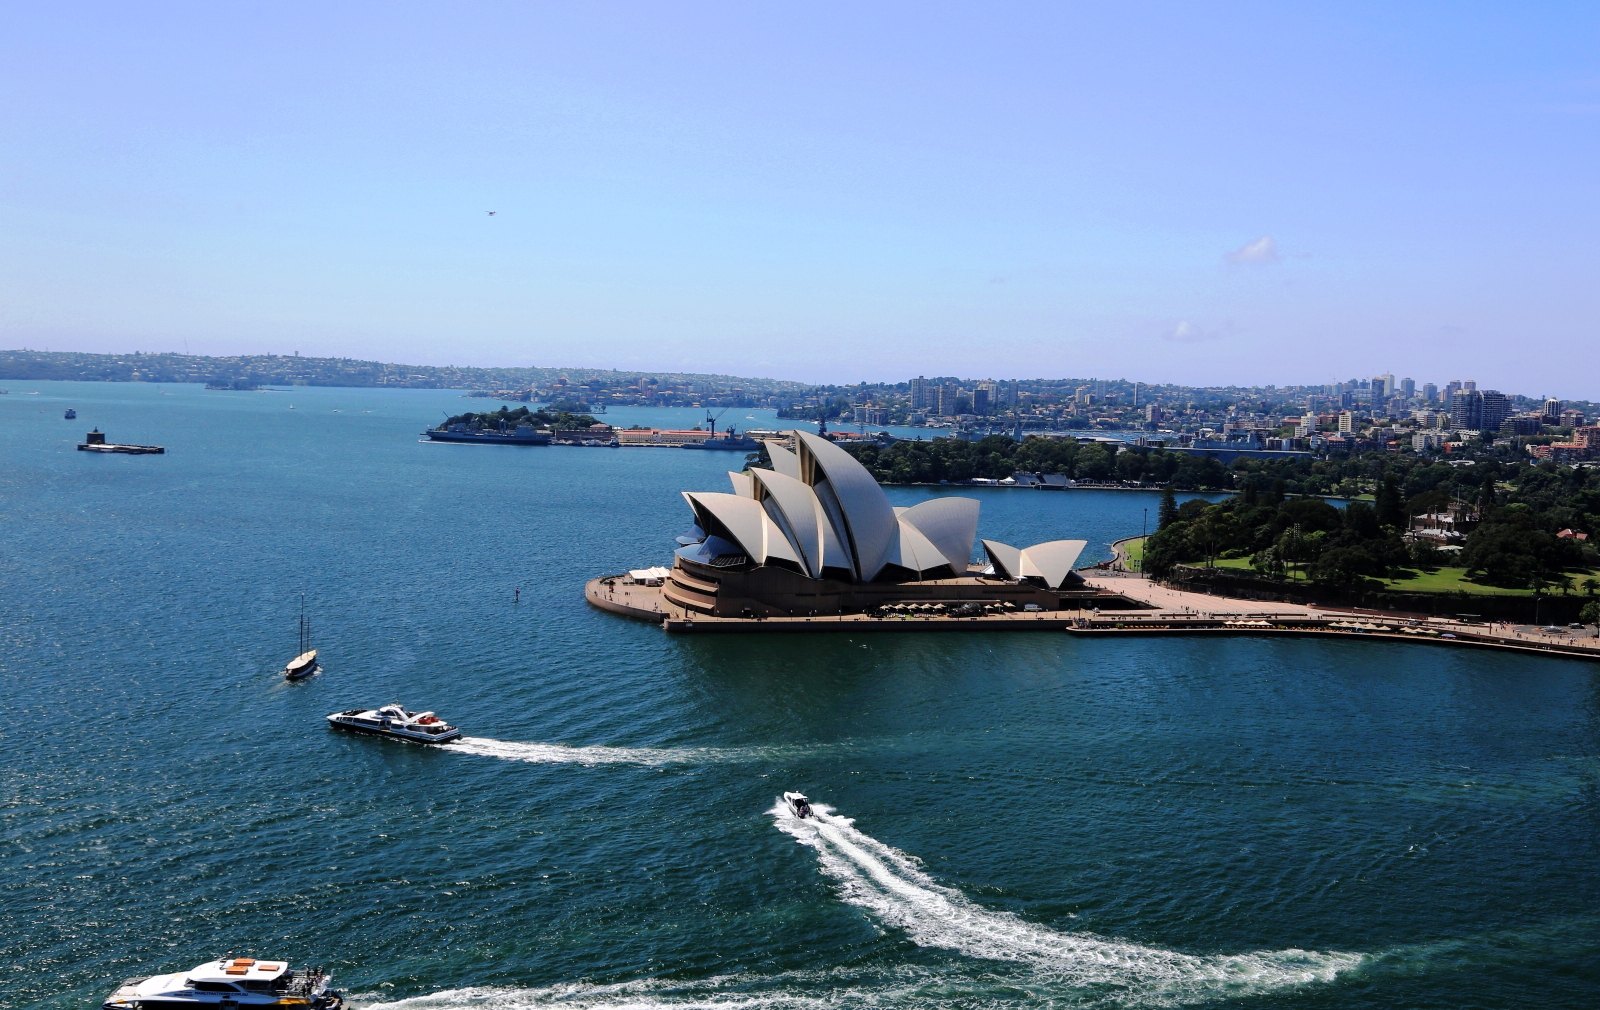 2019悉尼港_旅游攻略_门票_地址_游记点评,悉尼旅游景点推荐 - 去哪儿攻略社区